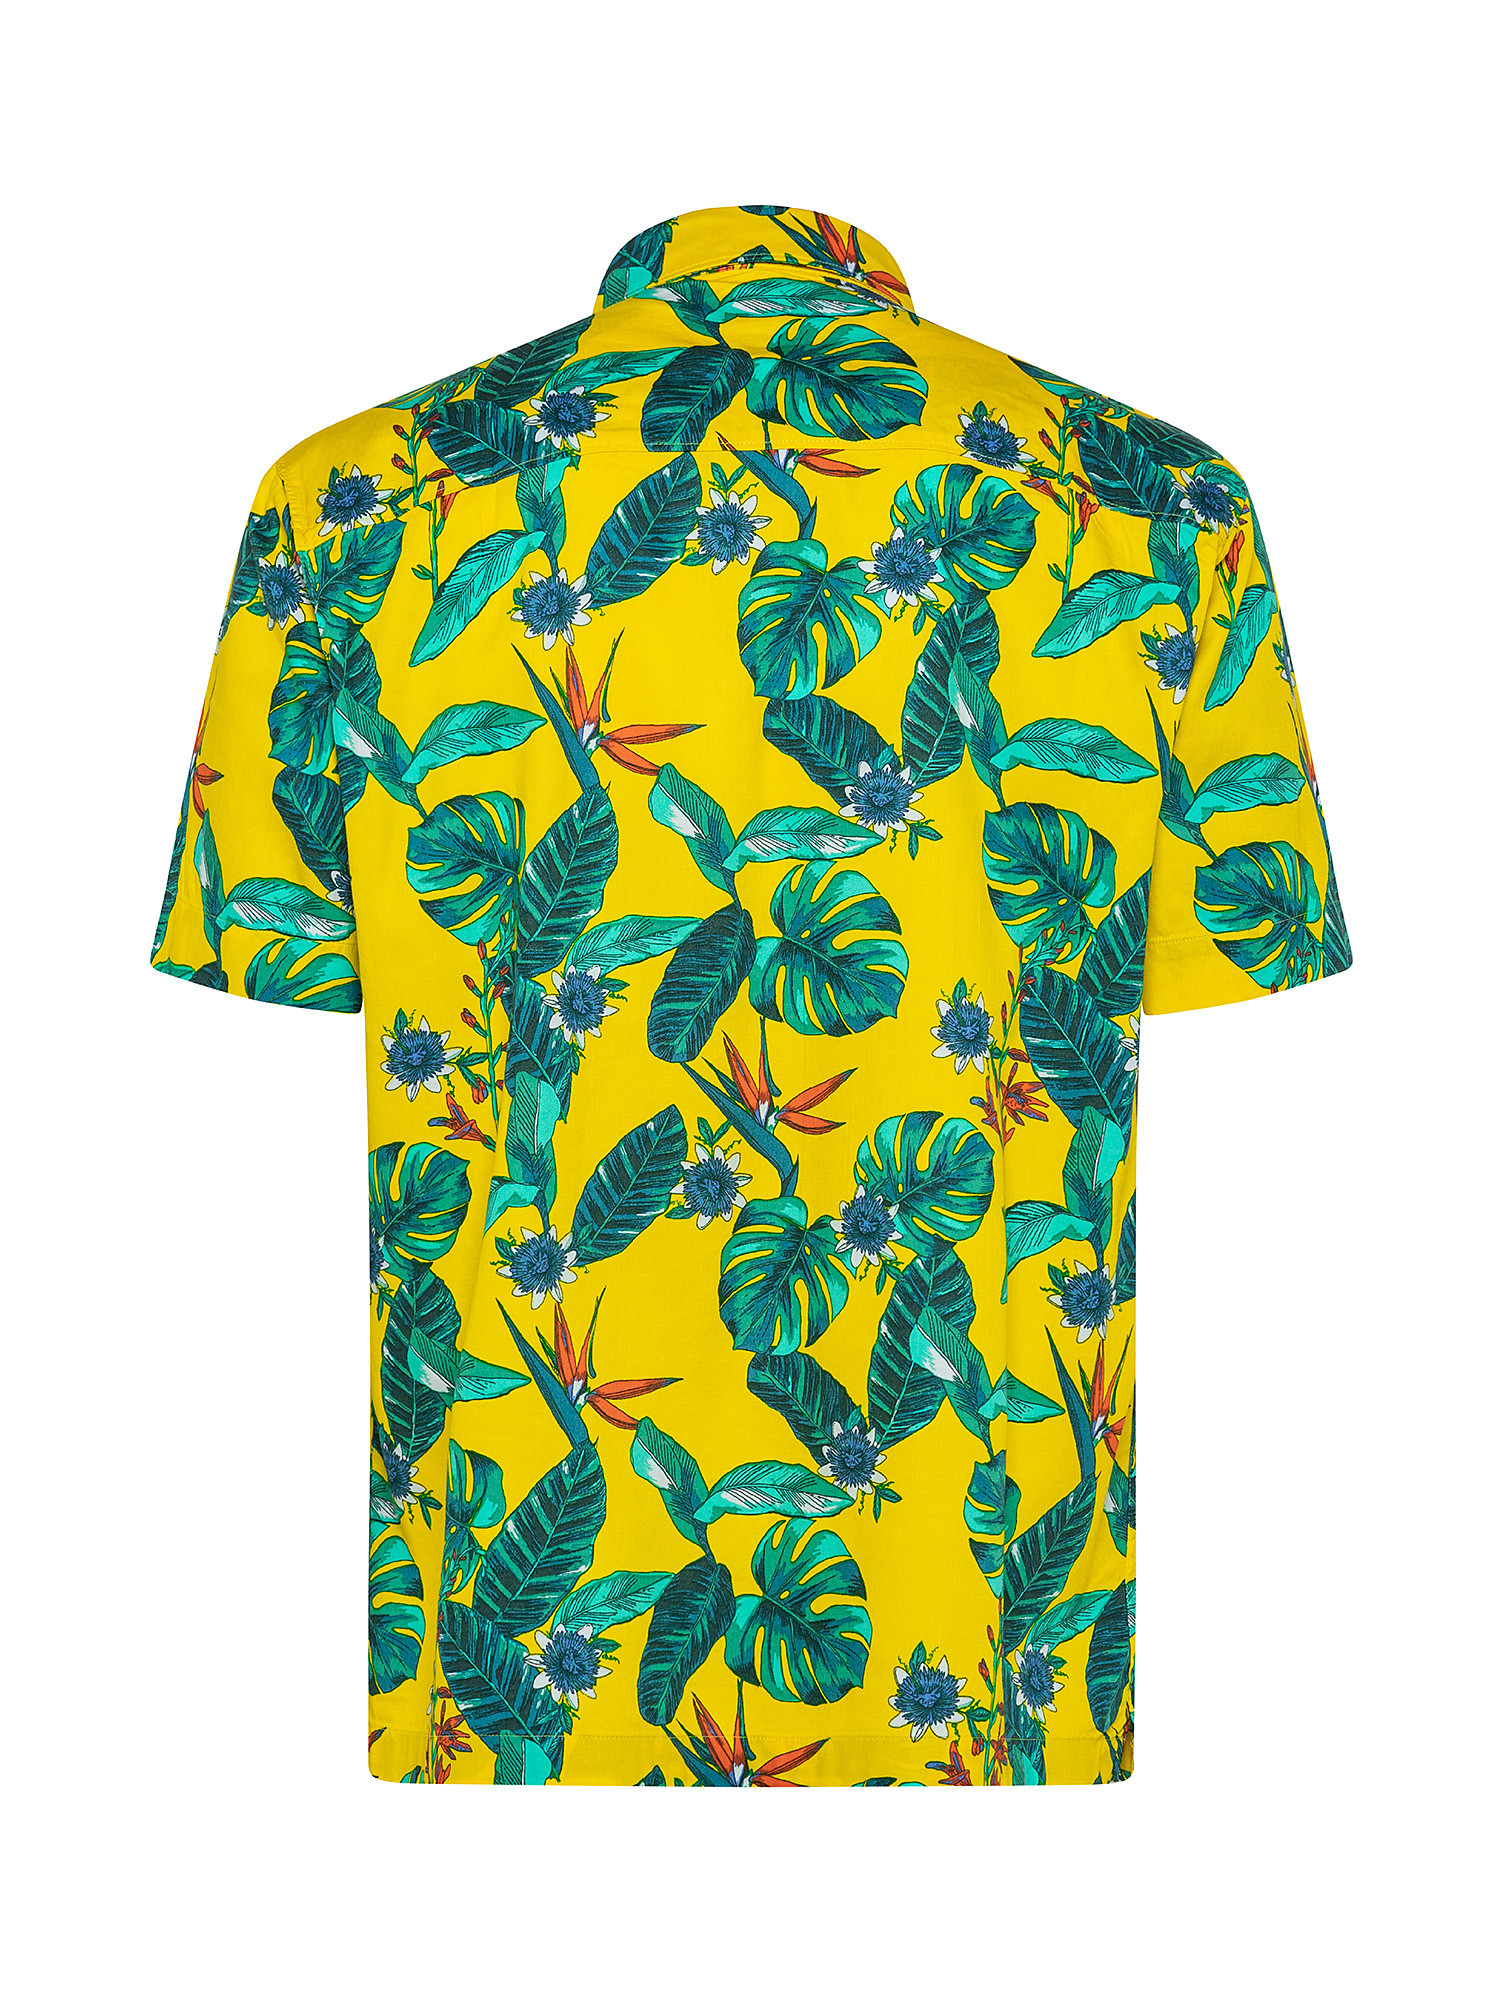 Camicia con motivo hawaiano, Giallo, large